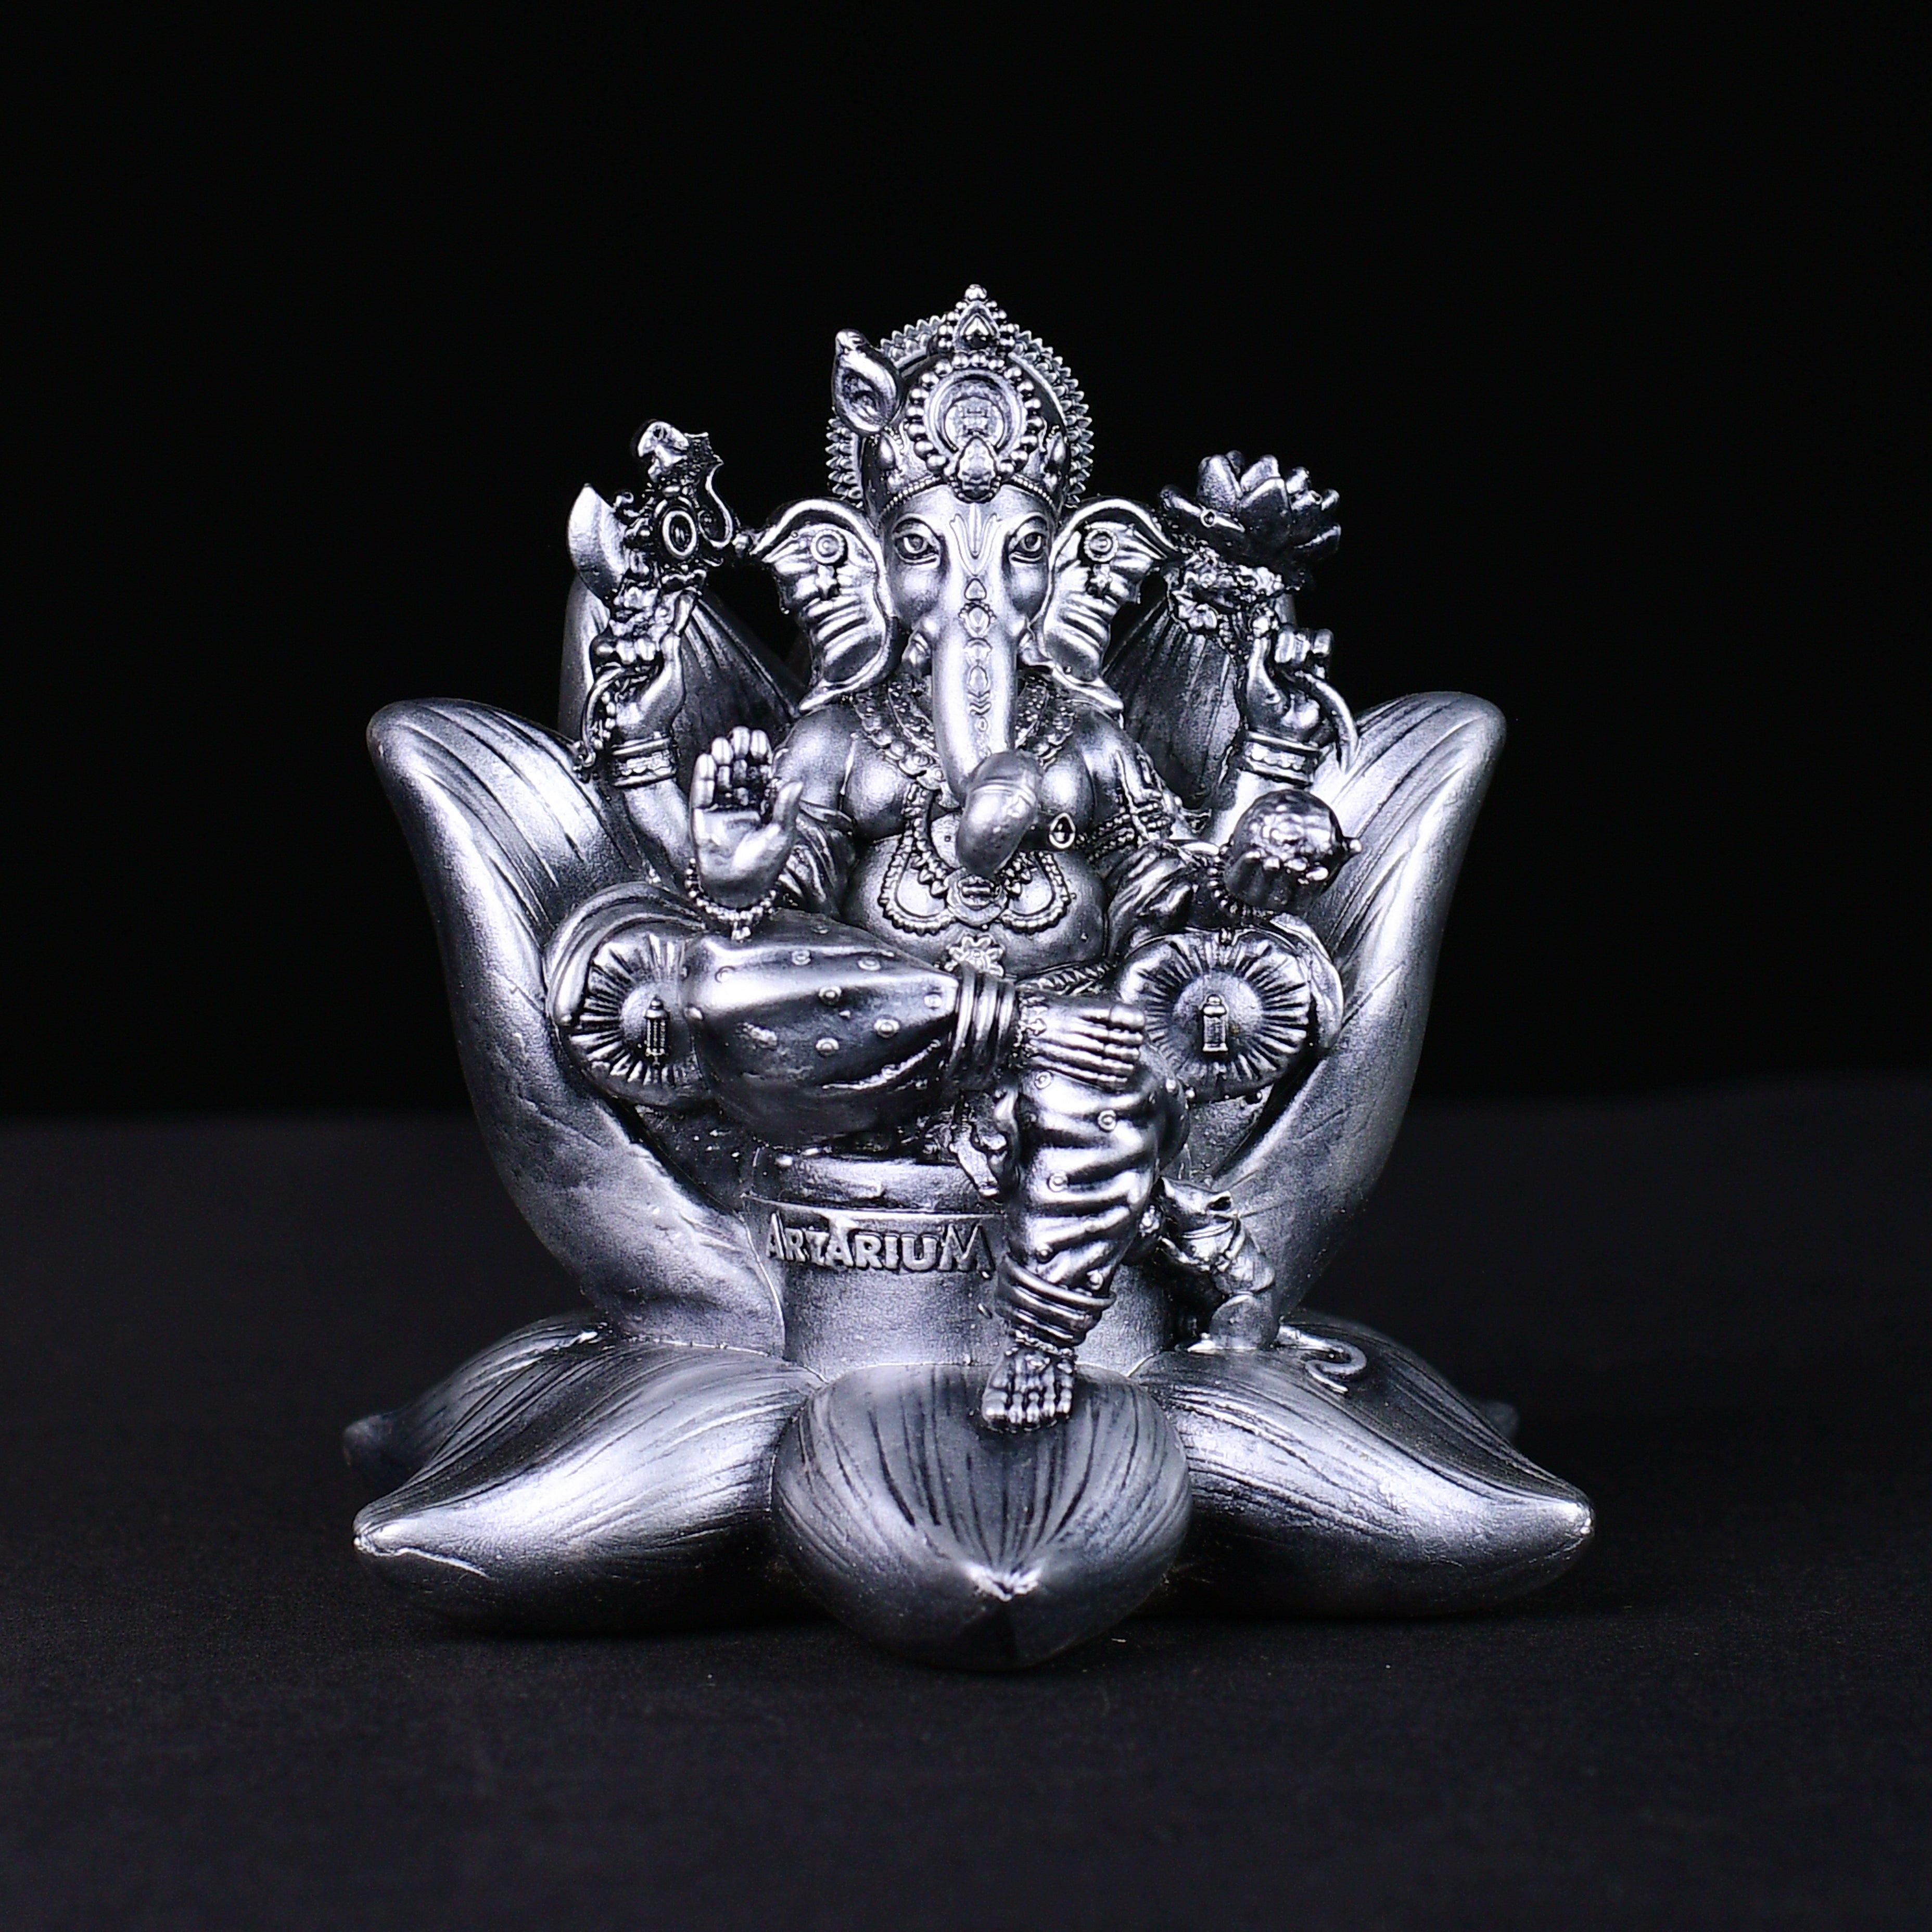 Ganesha Idol 4 Inch